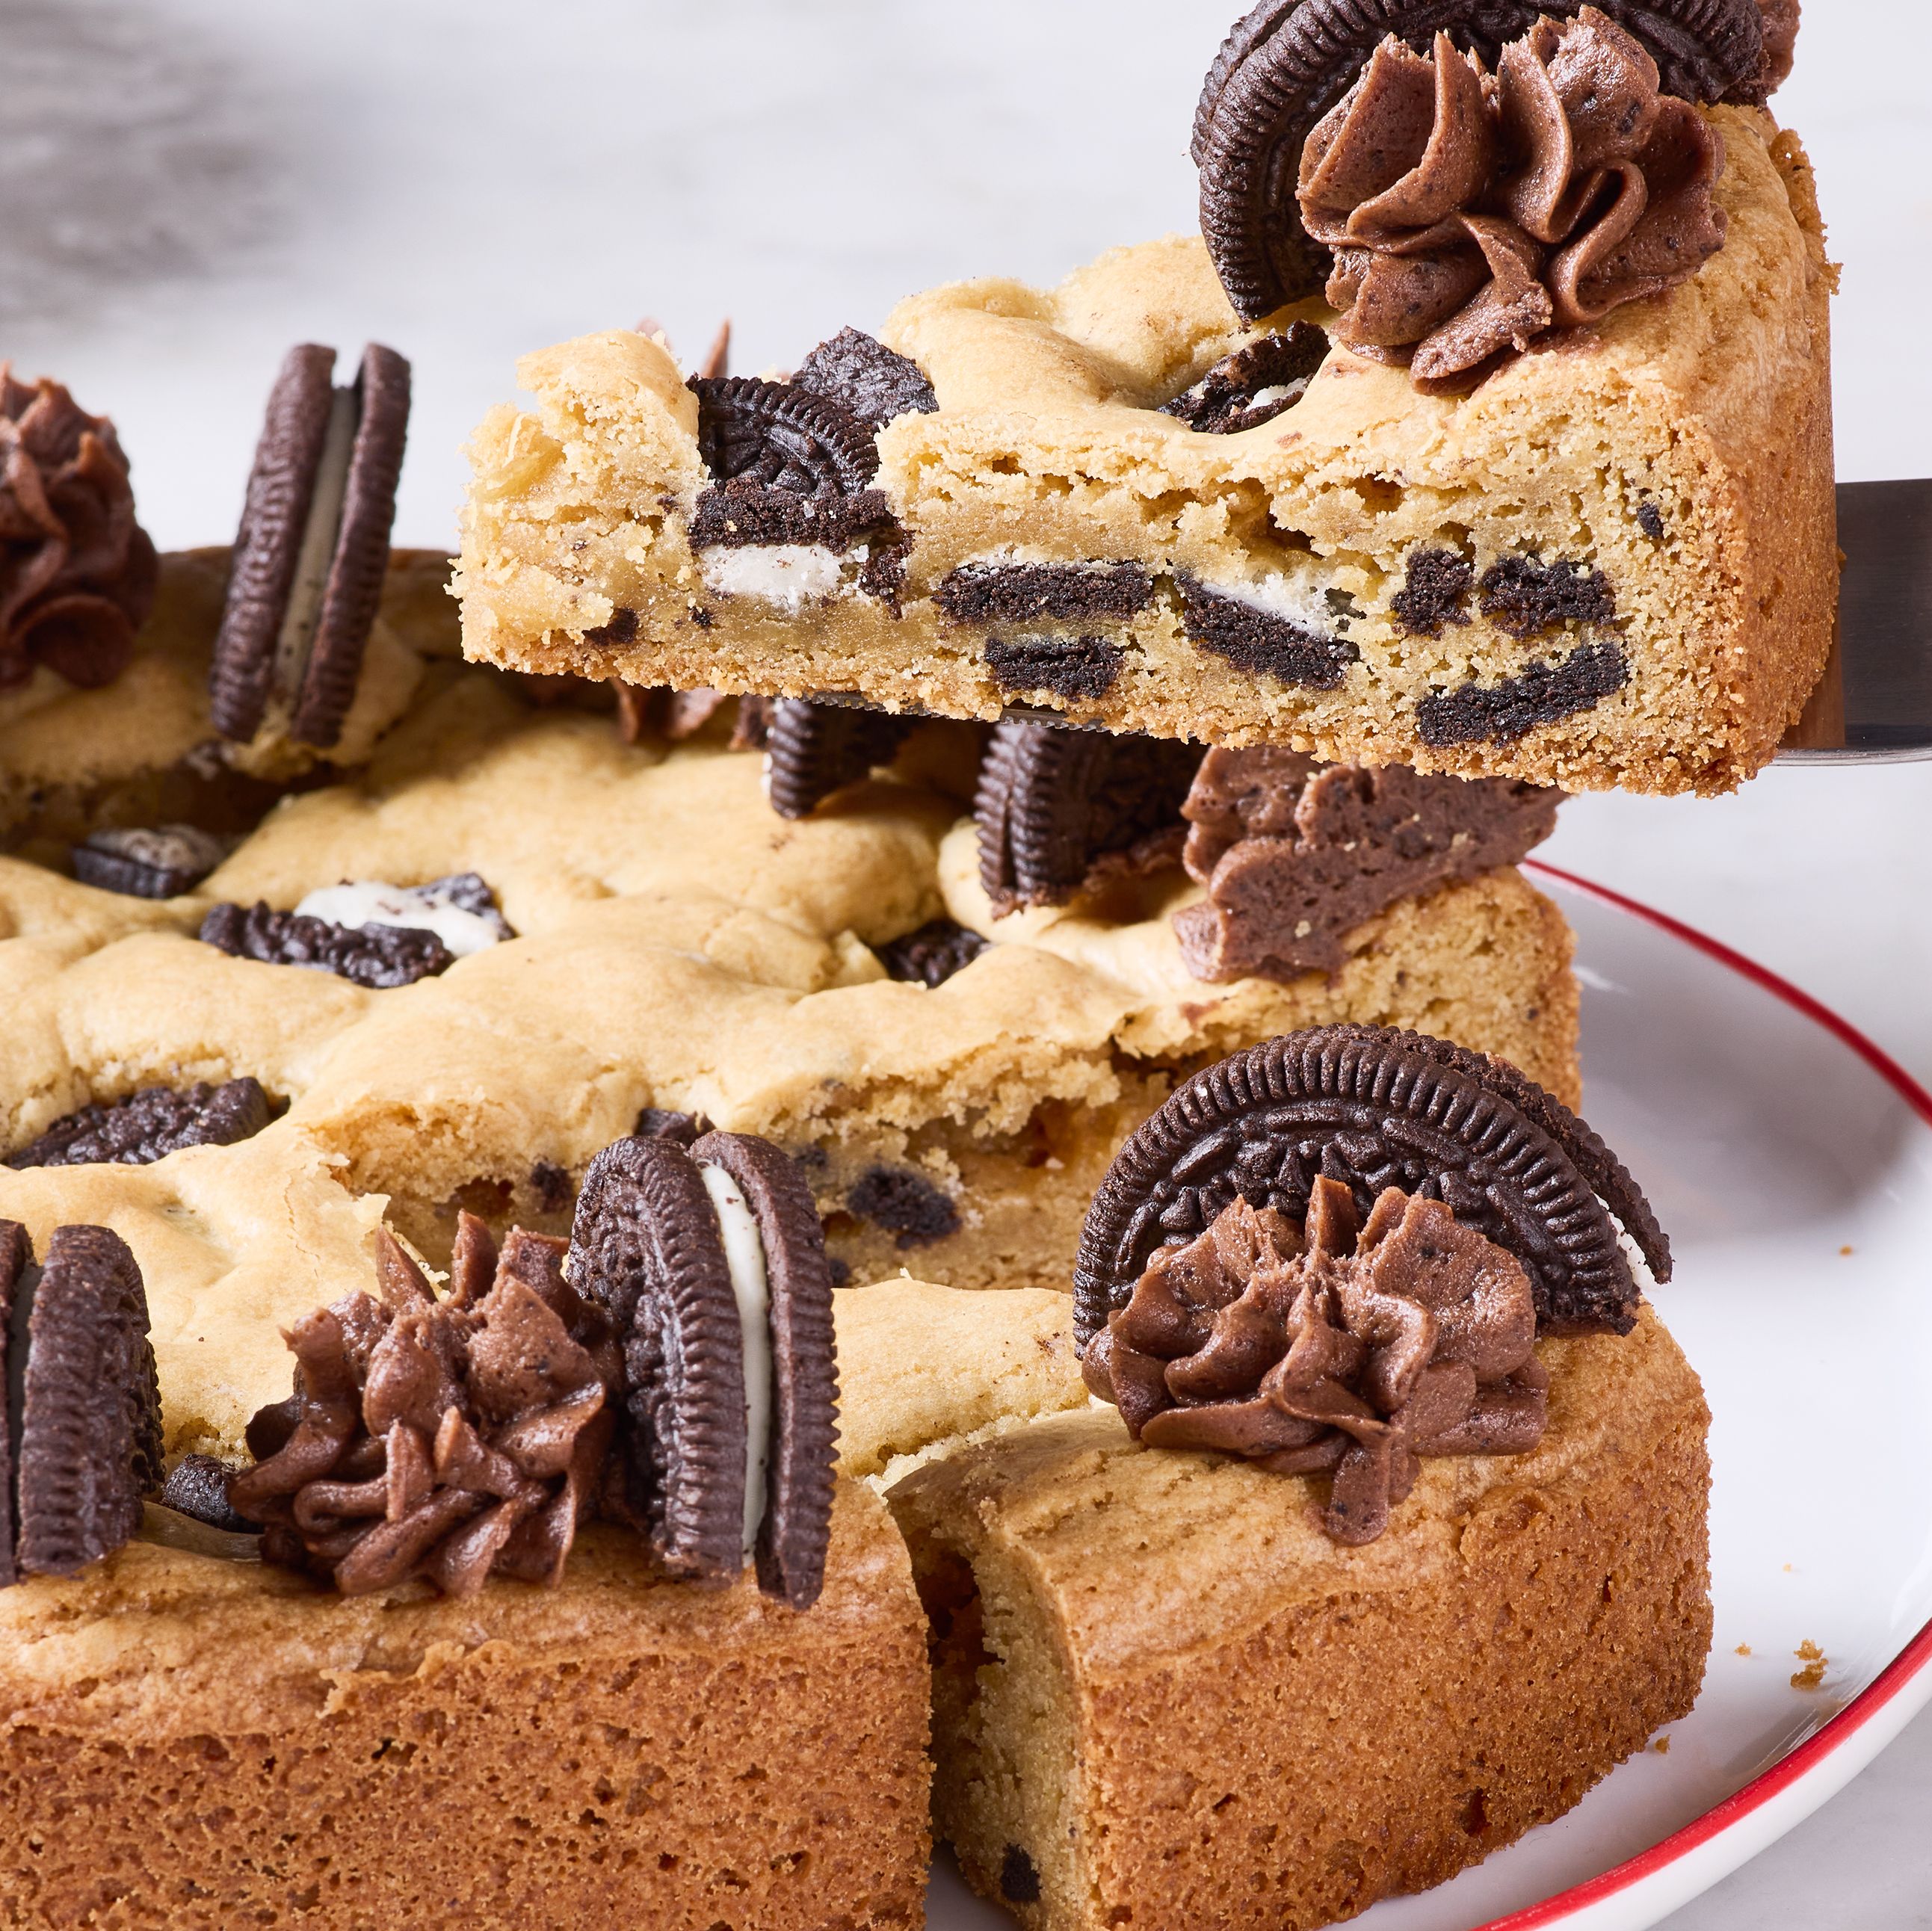 Décoration gâteau : 60+ superbes idées pour toute occasion  Chocolate chip  cookie cake, Oreo stuffed chocolate chip cookies, Cake recipes